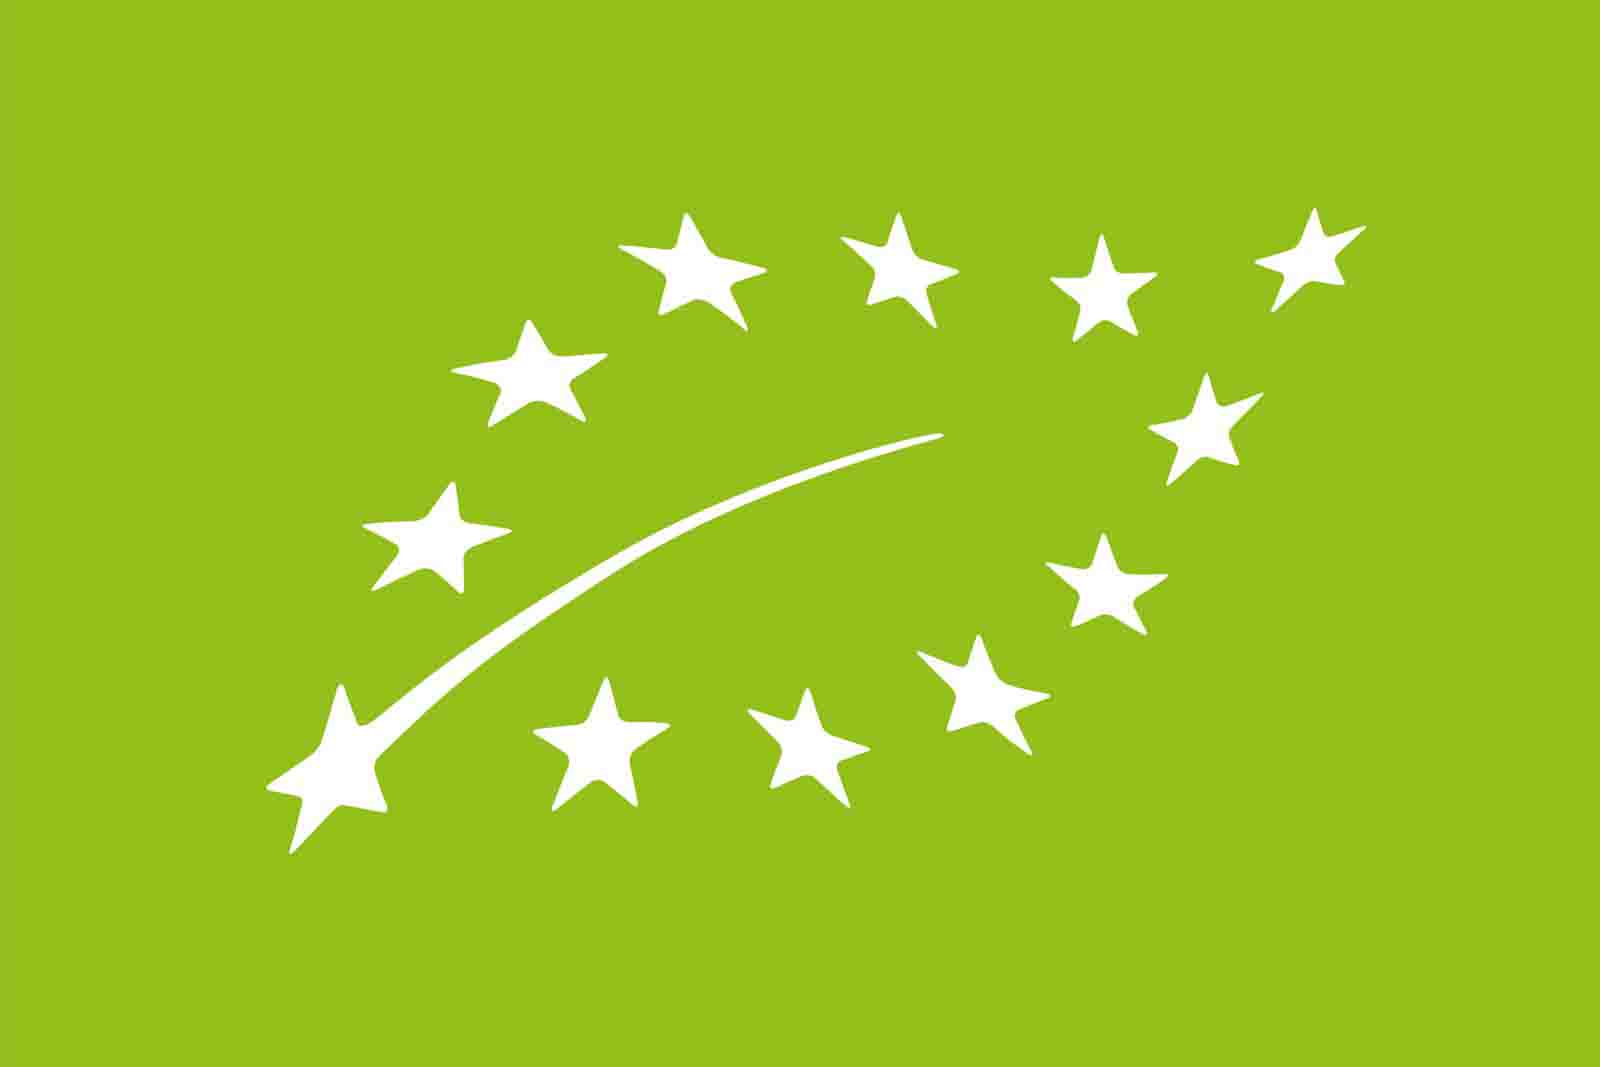 Επίσημο Σήμα Βιολογικού Προϊόντος της Ε.Ε.